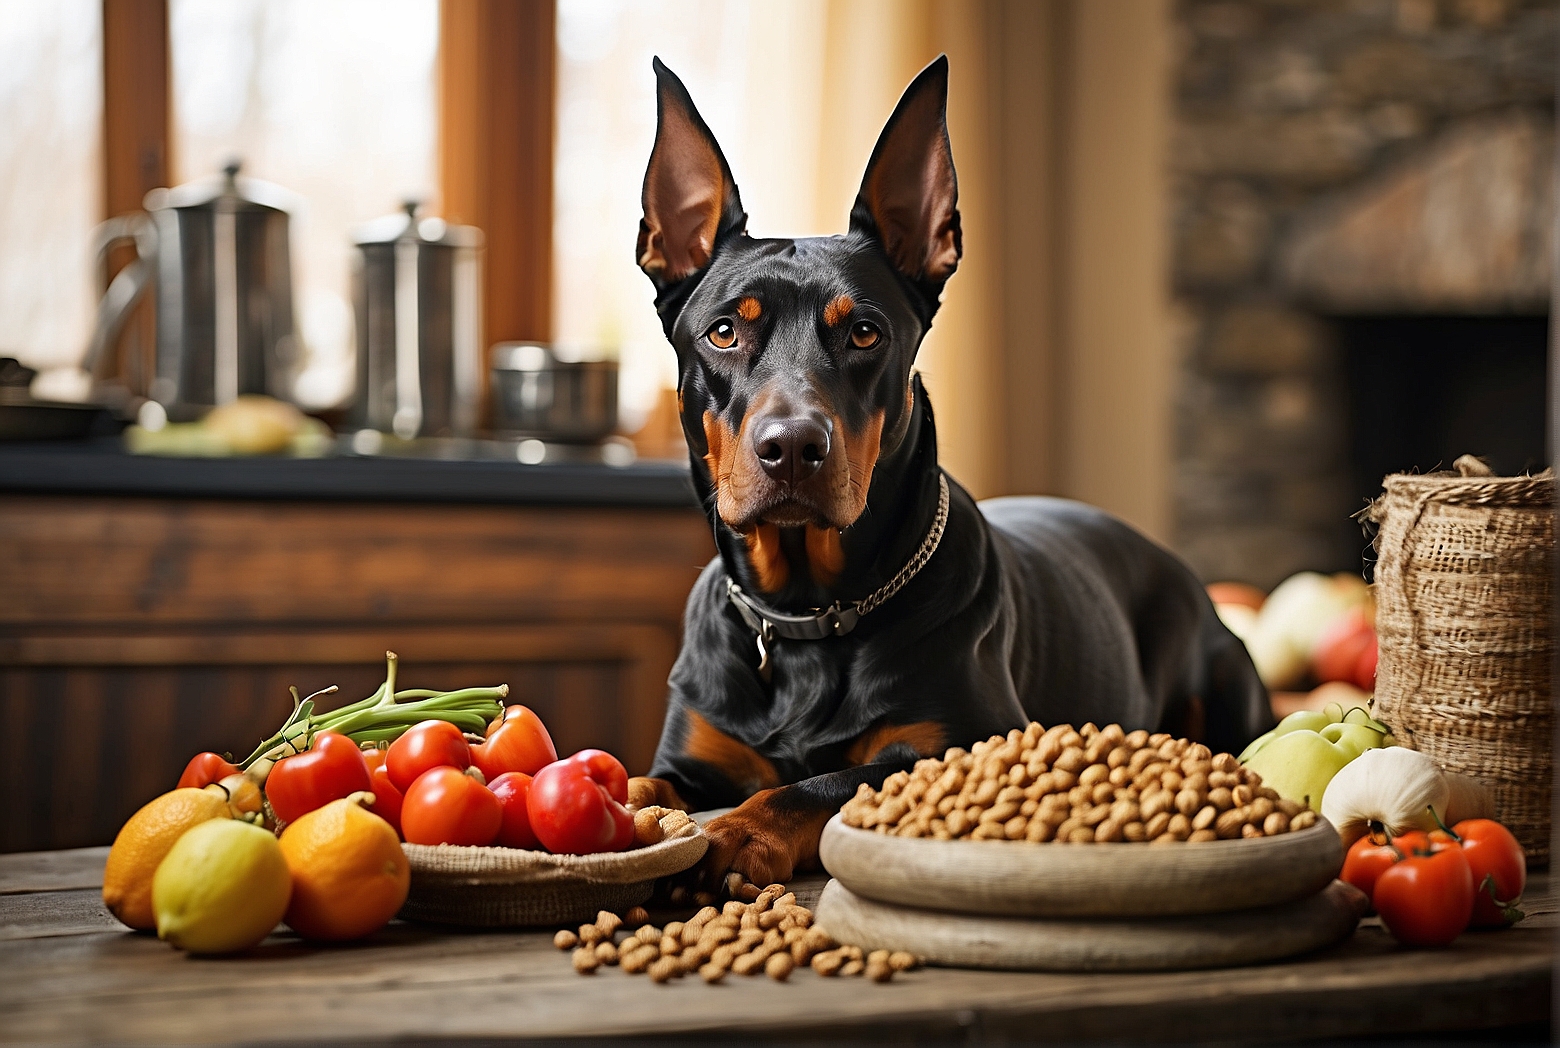 Top Senior Dog Foods for Dobermans